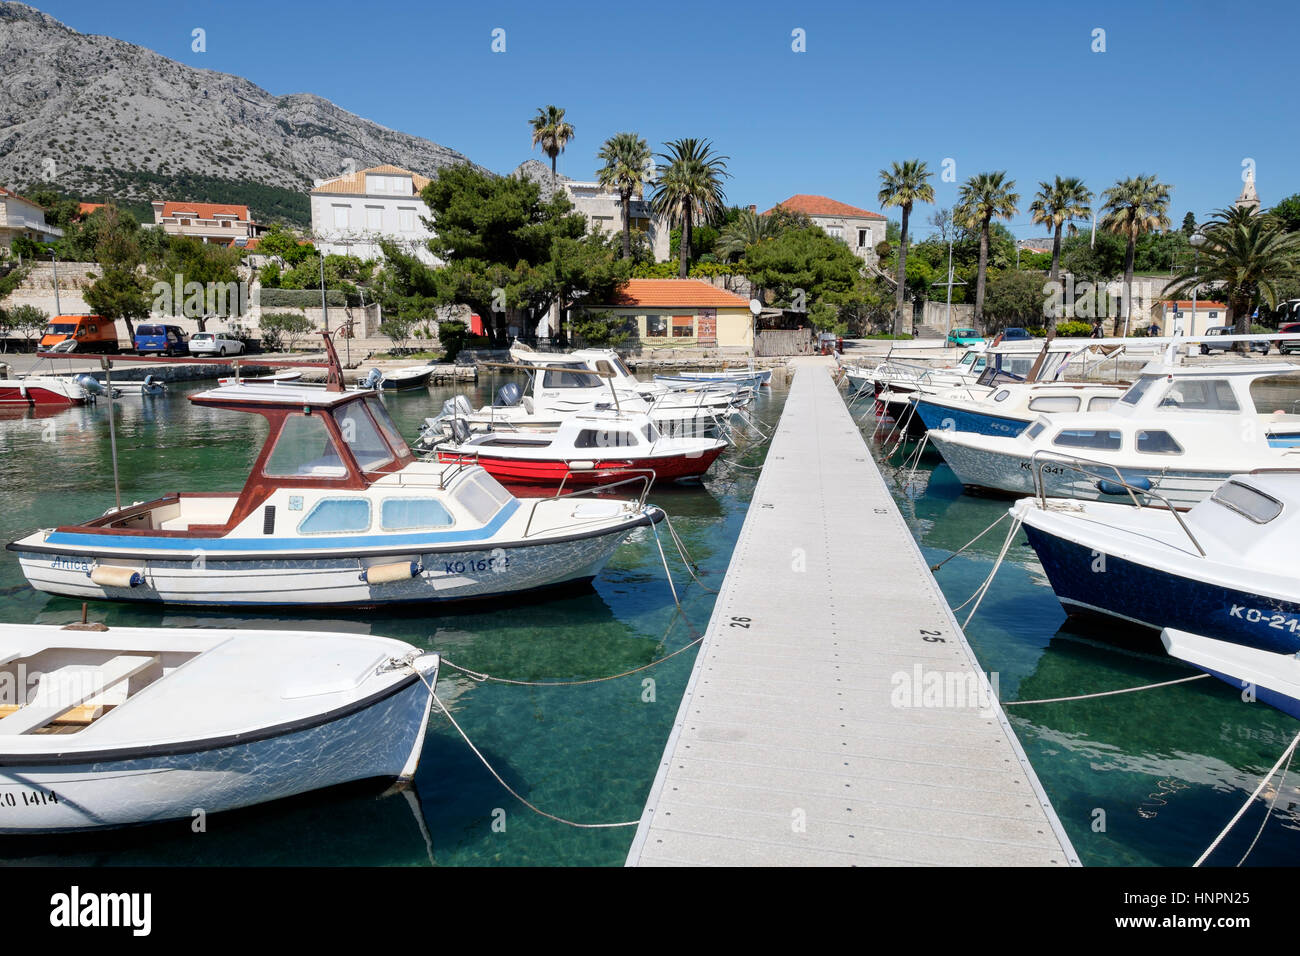 Motor boats moored in Marina Orebic, Orebic, Peljesac peninsula, Croatia Stock Photo